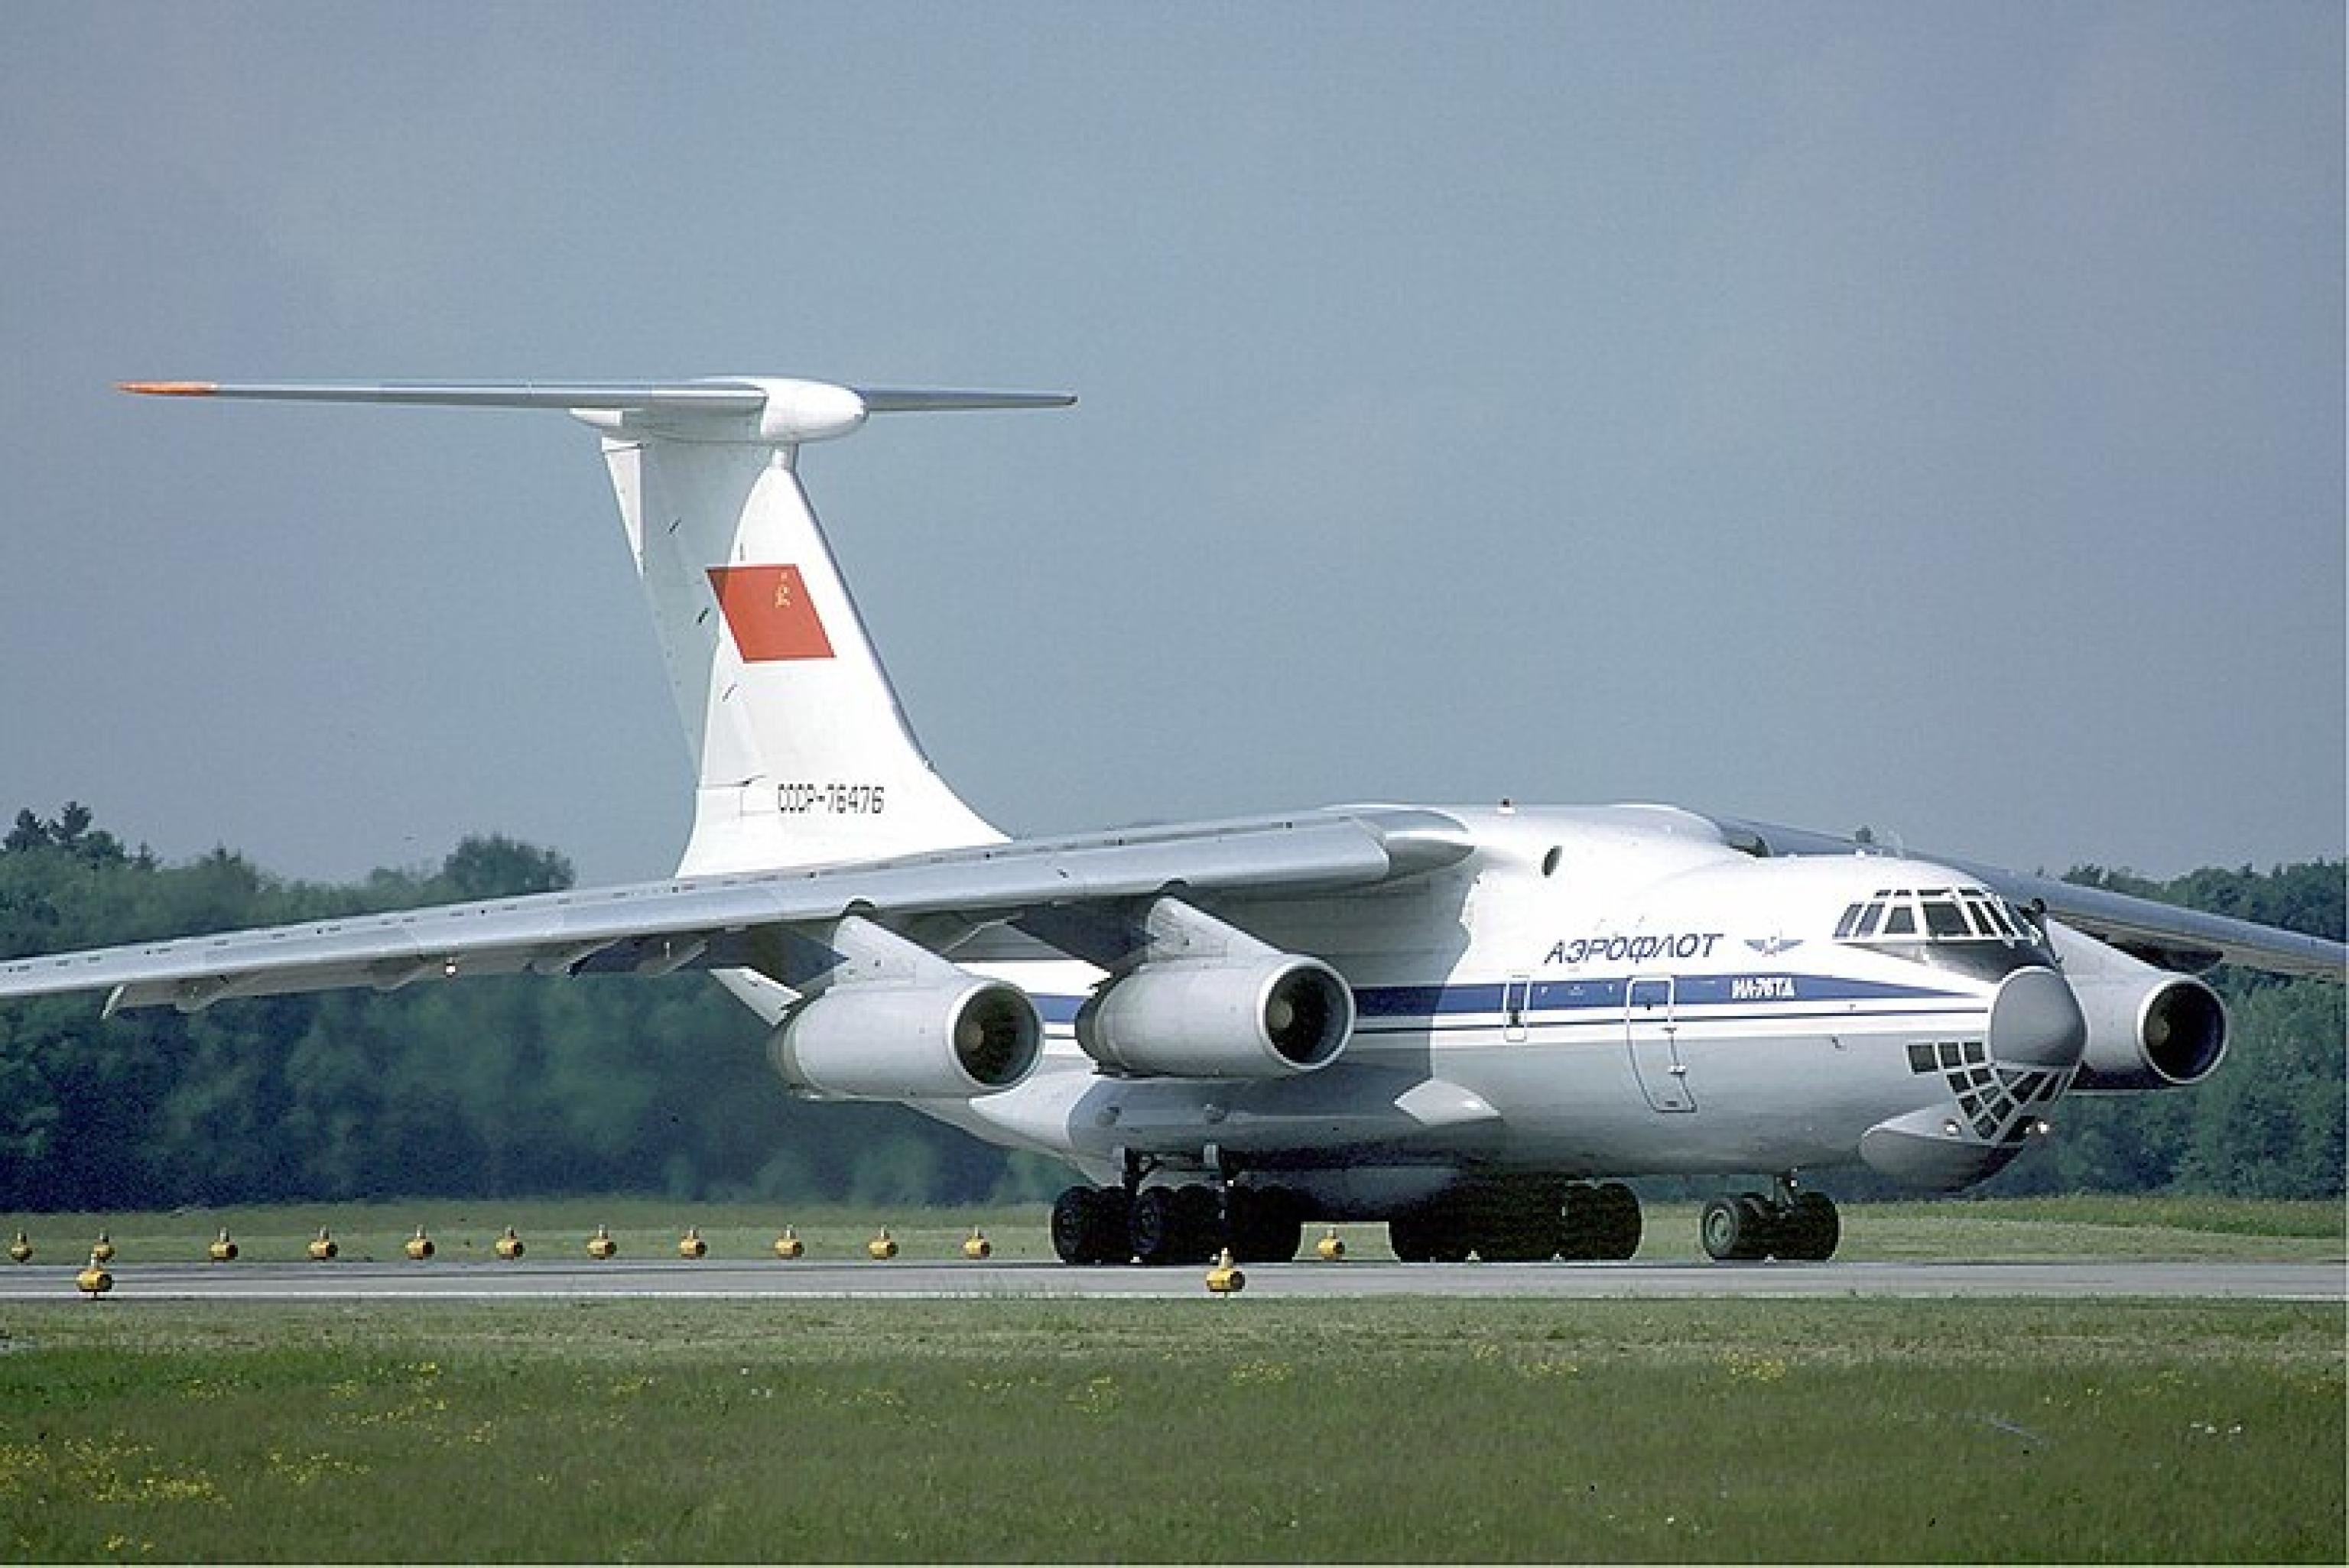 Un aereo da trasporto russo Ilyushin II-76 del tipo di quello precipitato